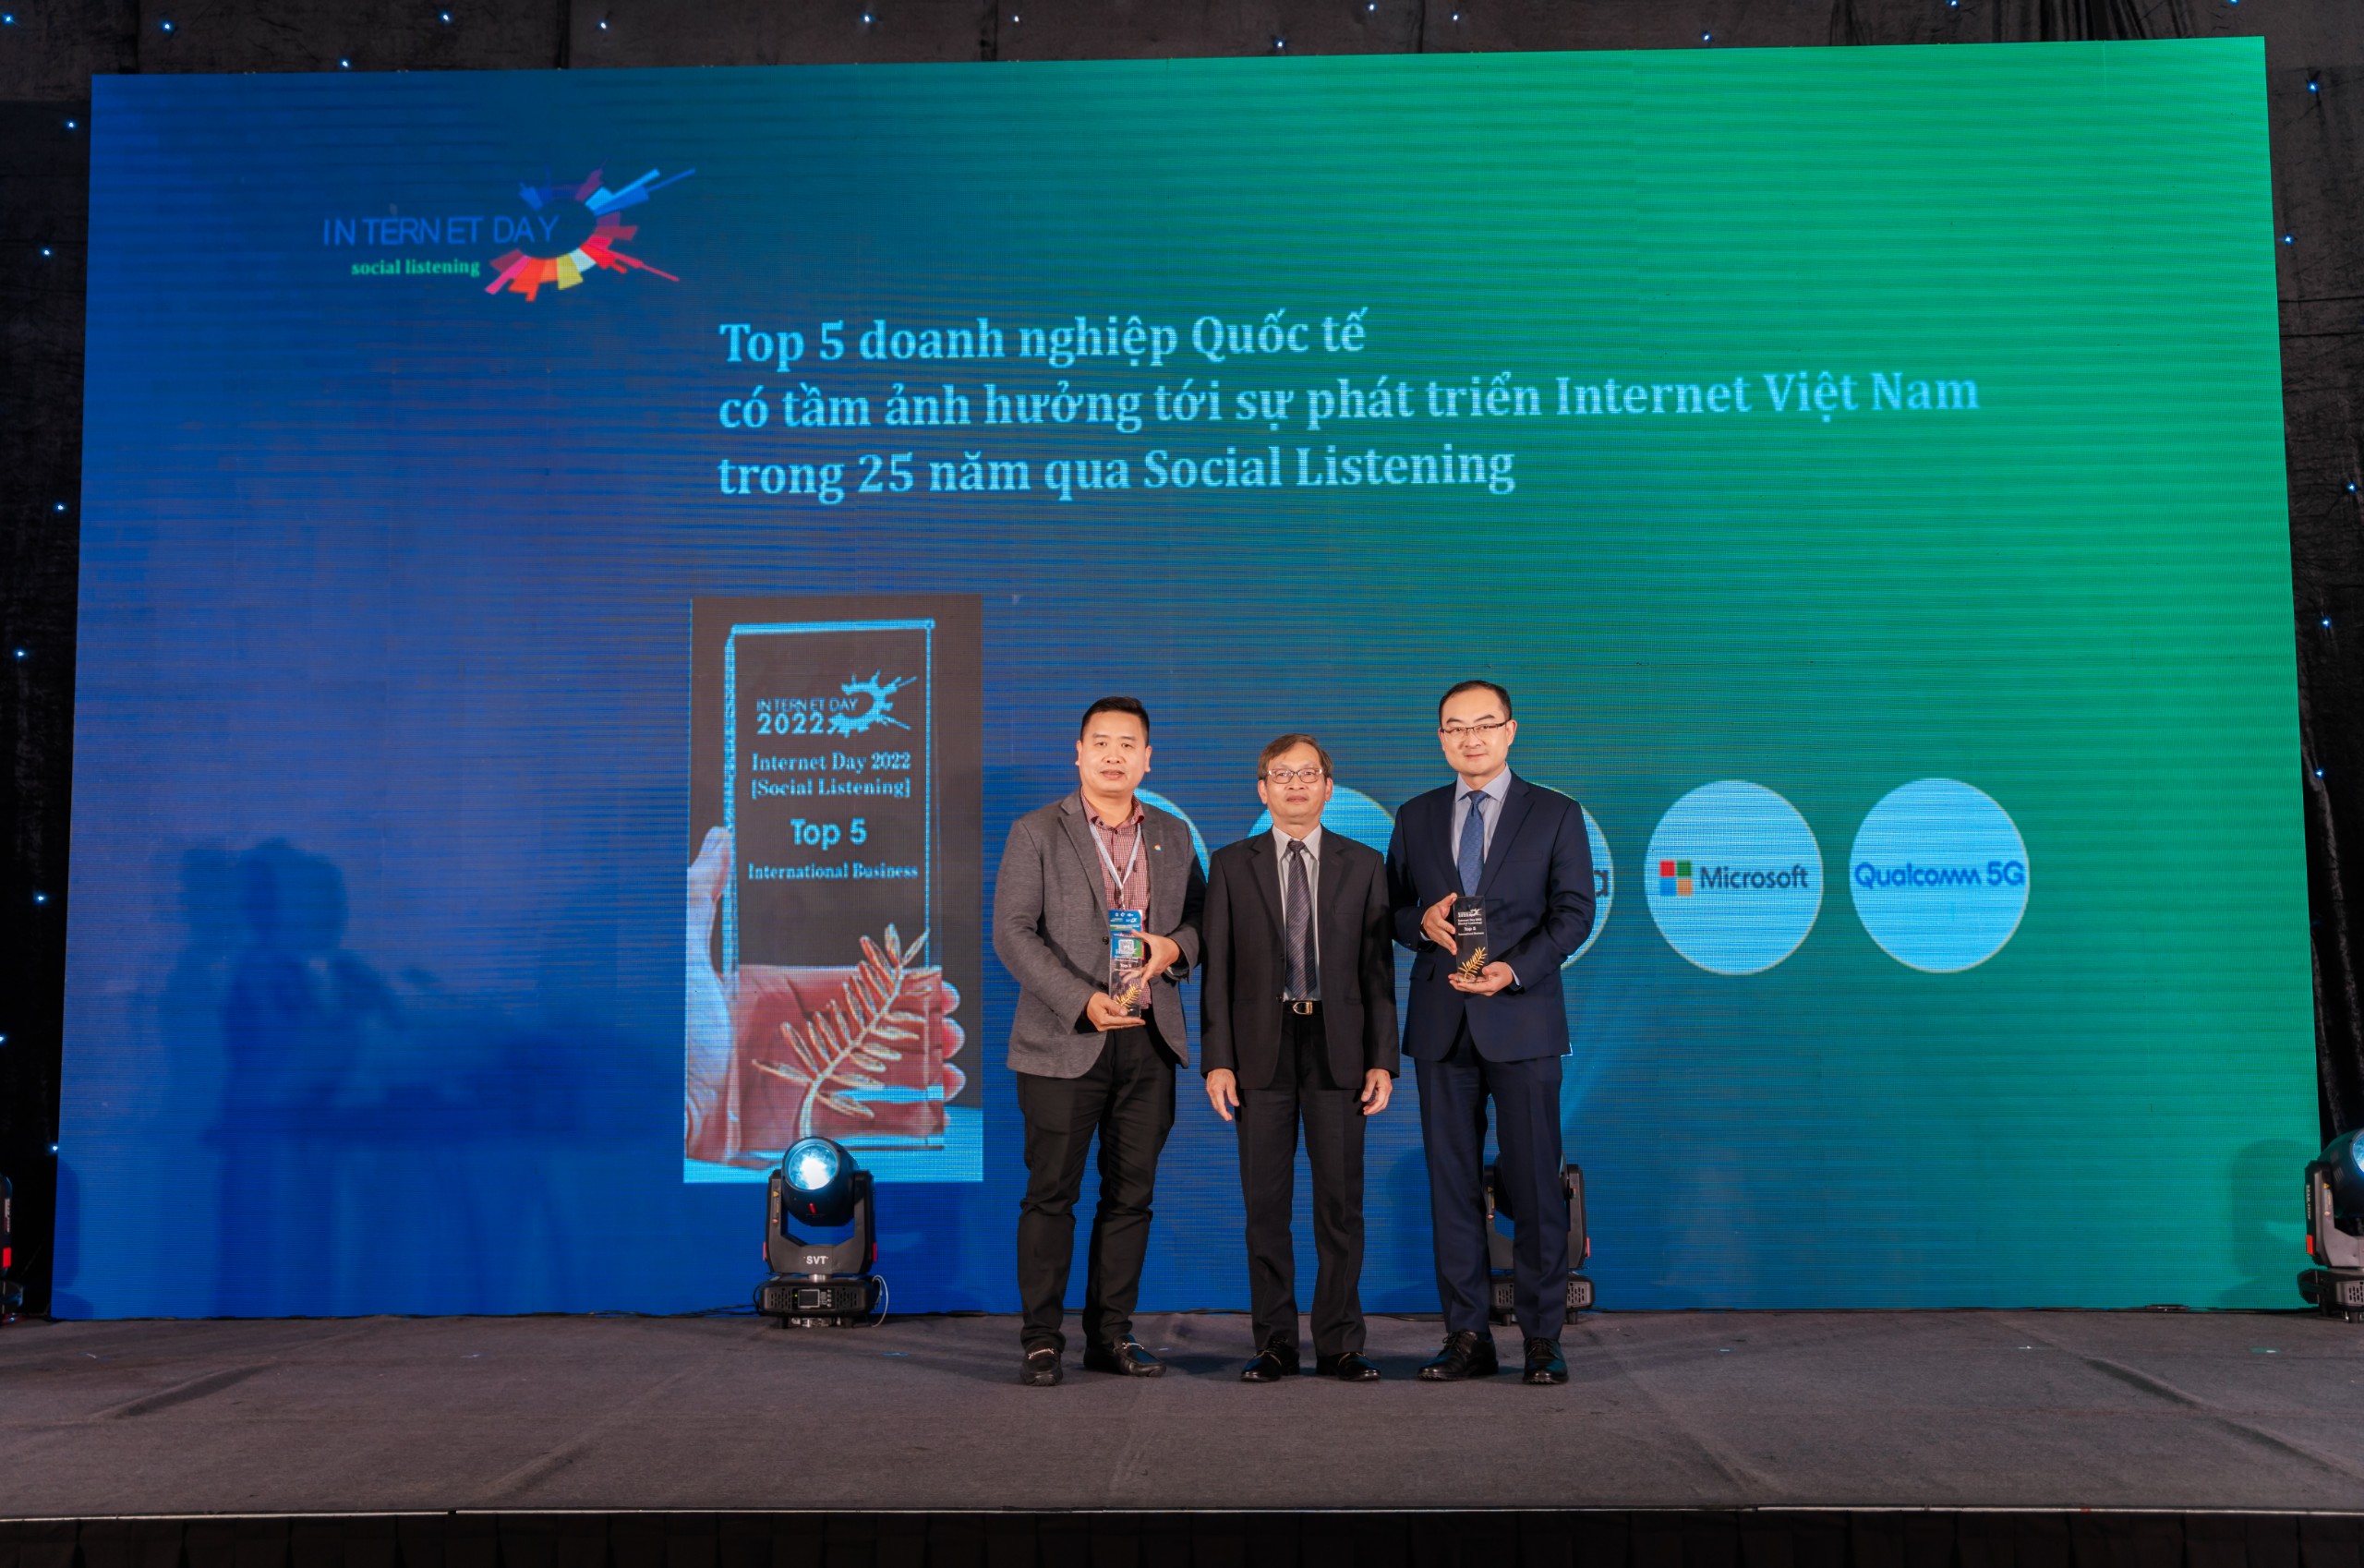 Ông David Wei, Tổng Giám đốc Huawei Việt Nam nhận giải thưởng Top 5 Doanh nghiệp Quốc tế có tầm ảnh hưởng tới sự phát triển Internet Việt Nam